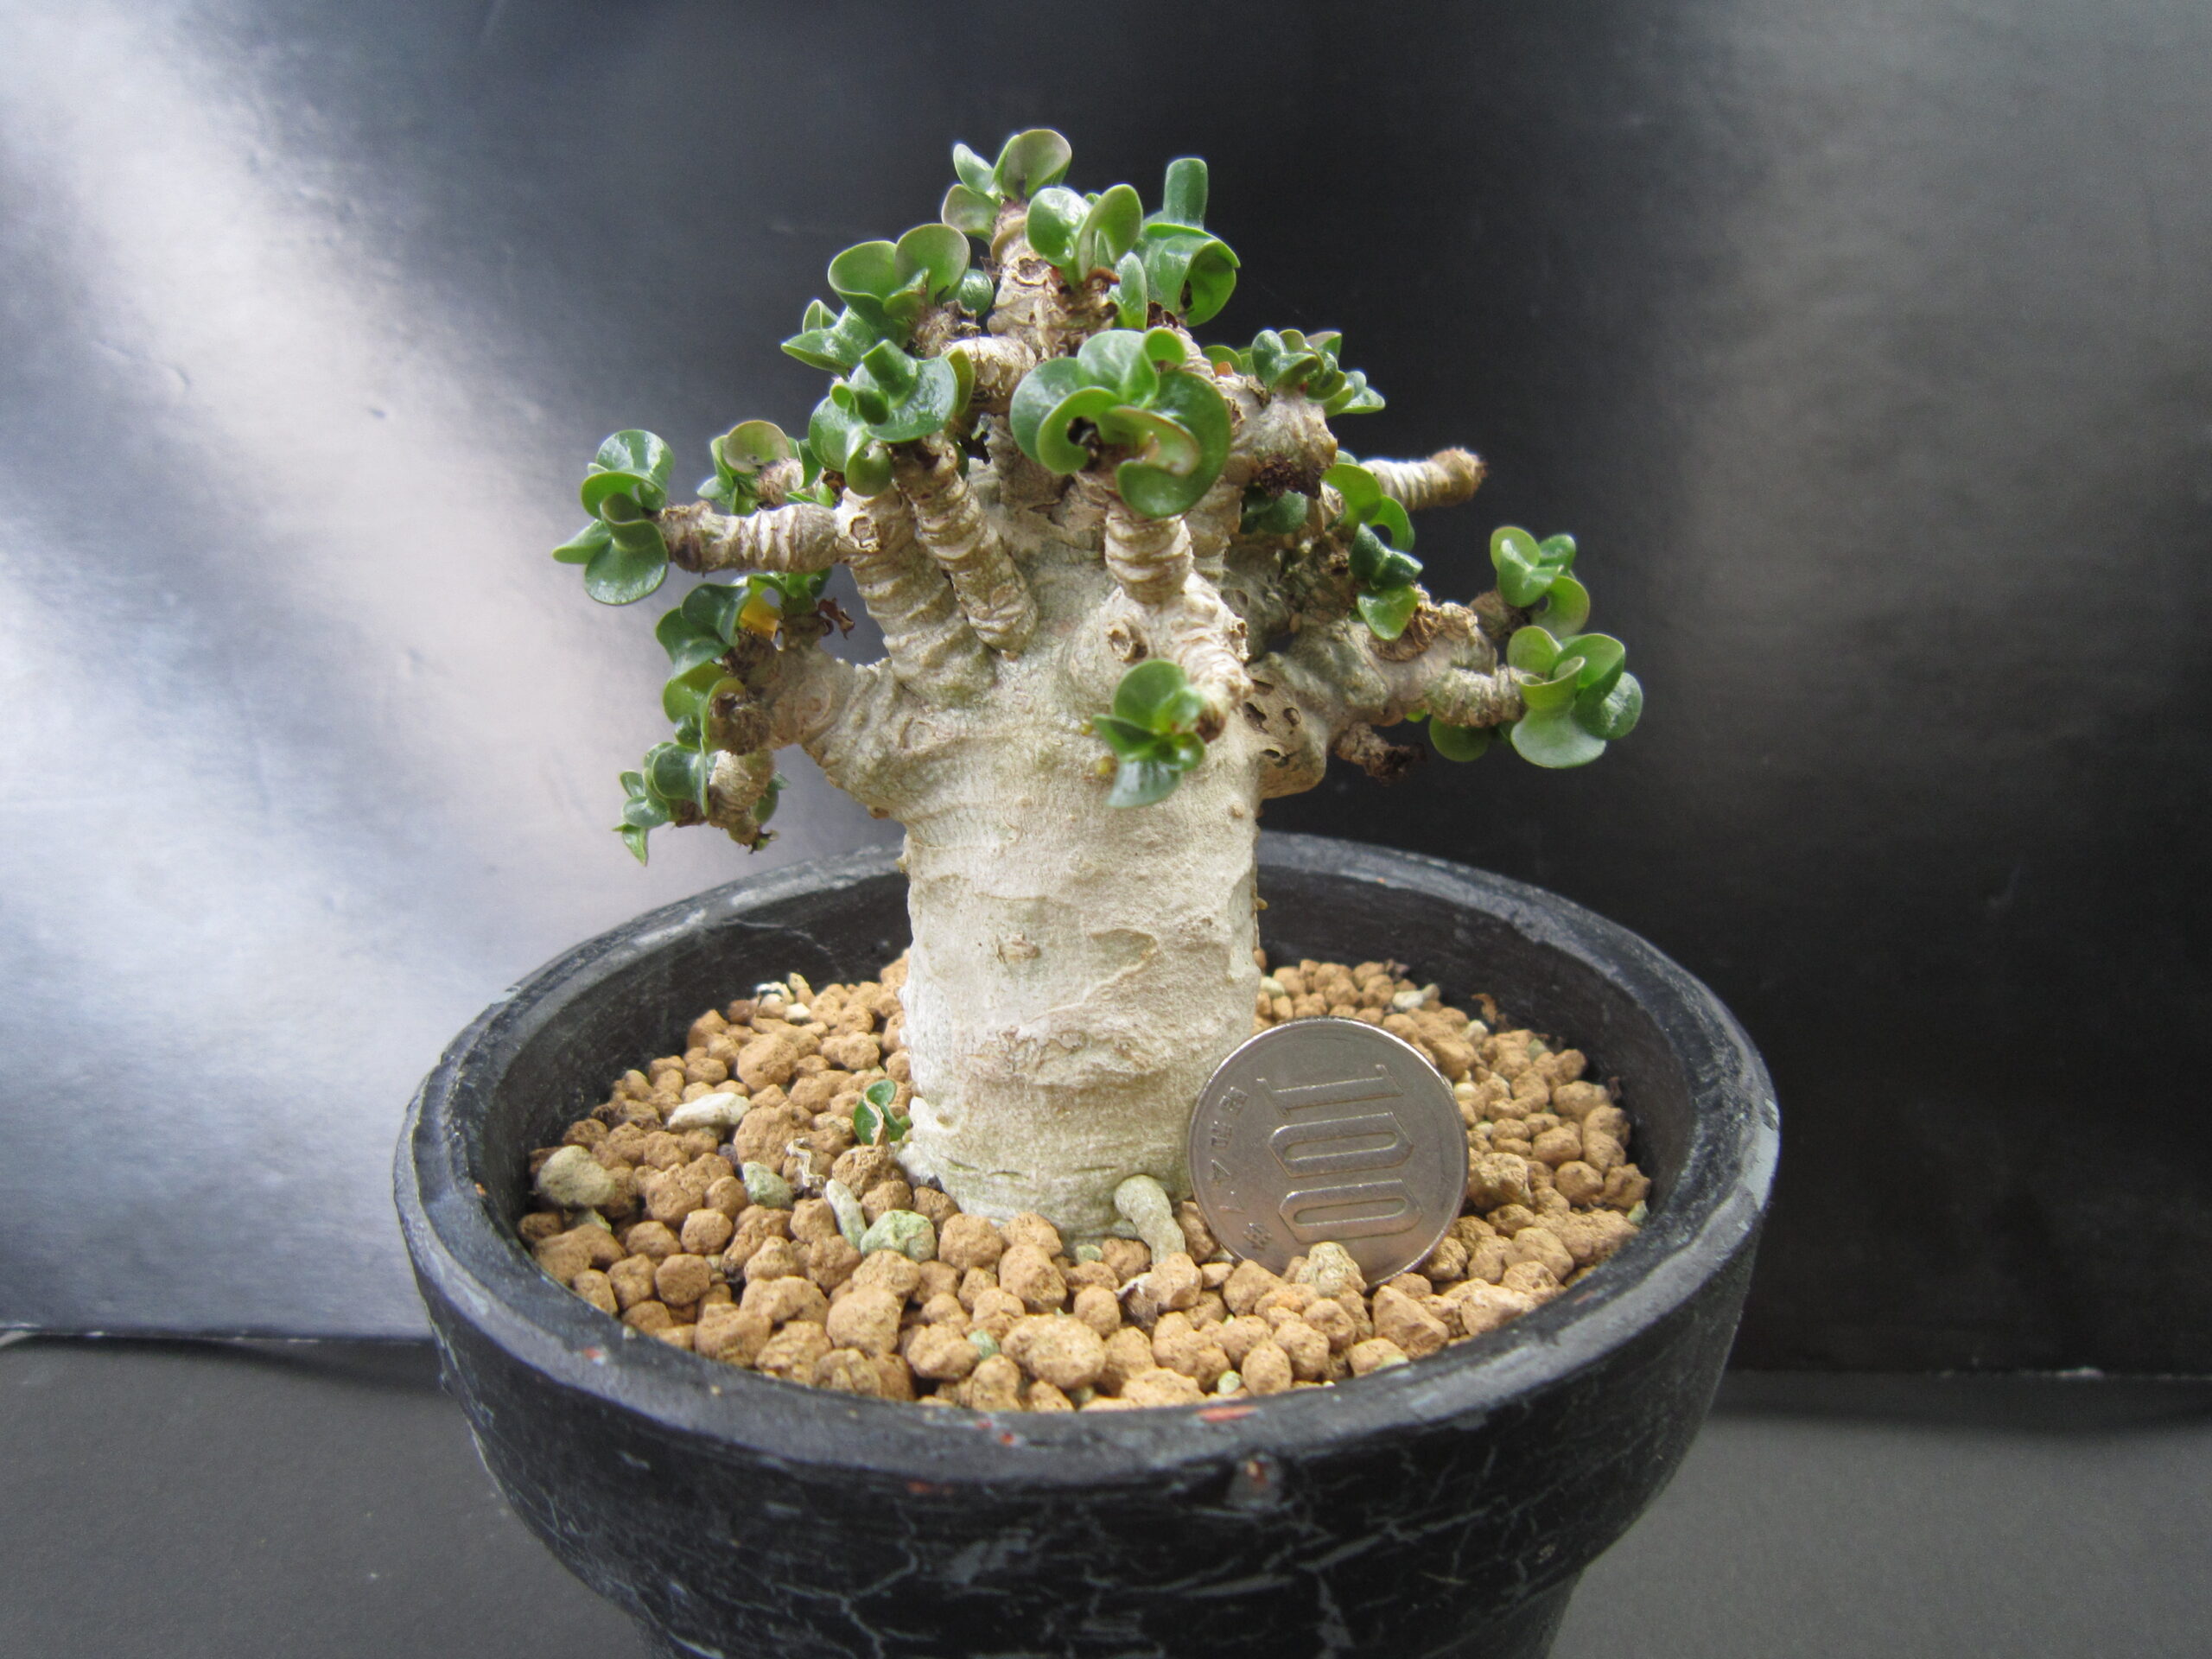 100円玉を横に置いて撮影した盆栽風に植えたアデニウム・アラビカム